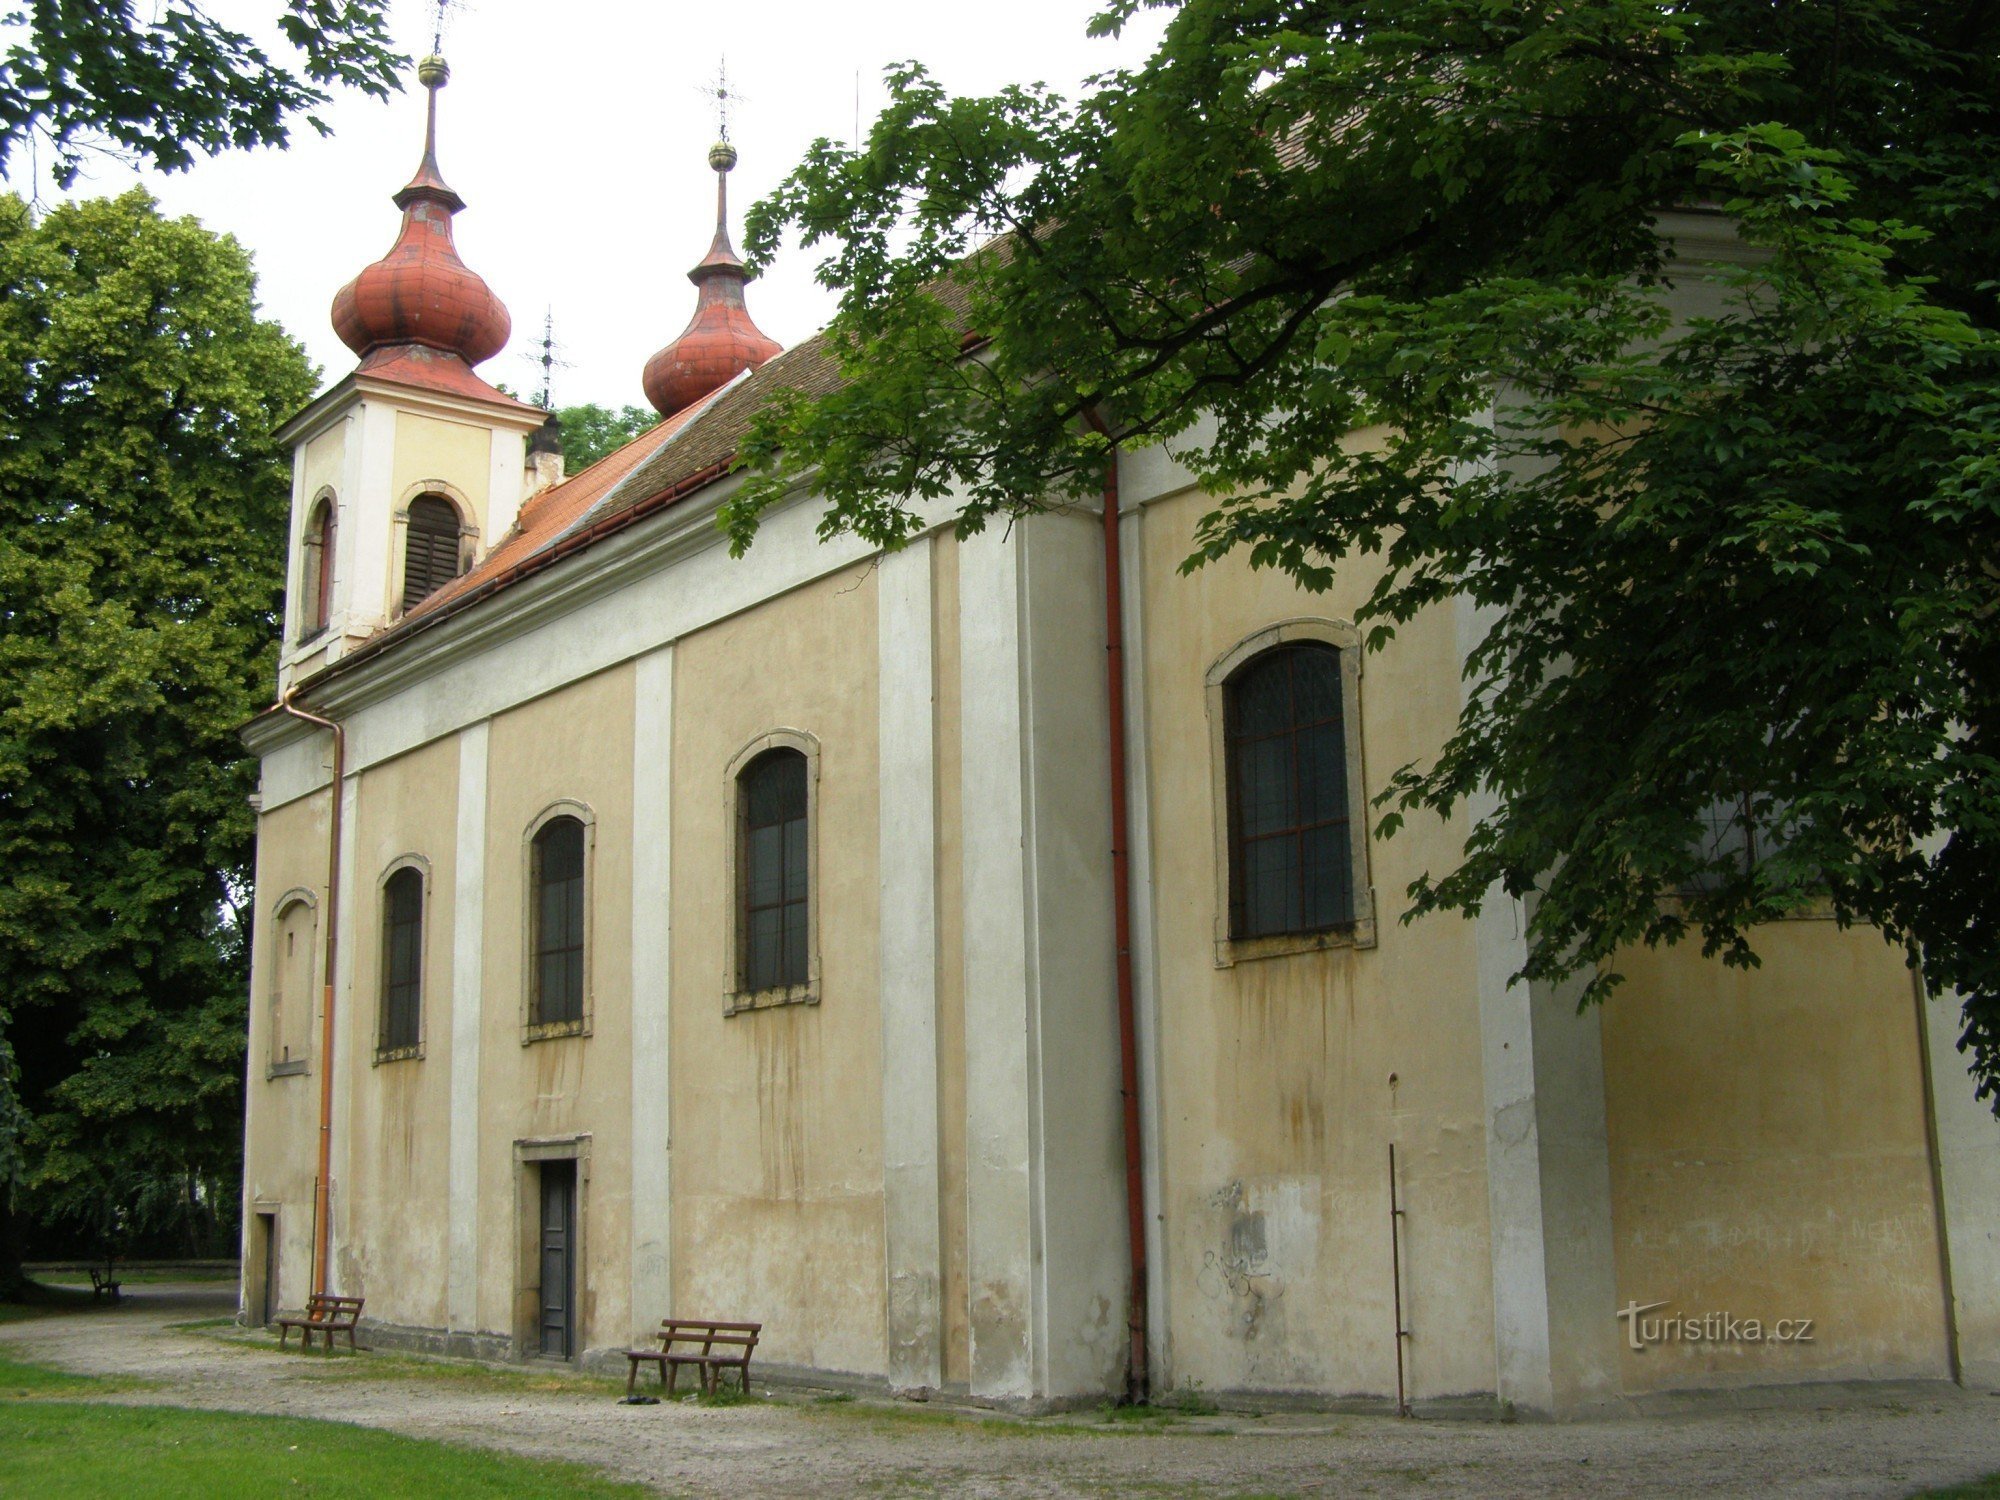 Nový Bydžov - Kościół Świętej Trójcy